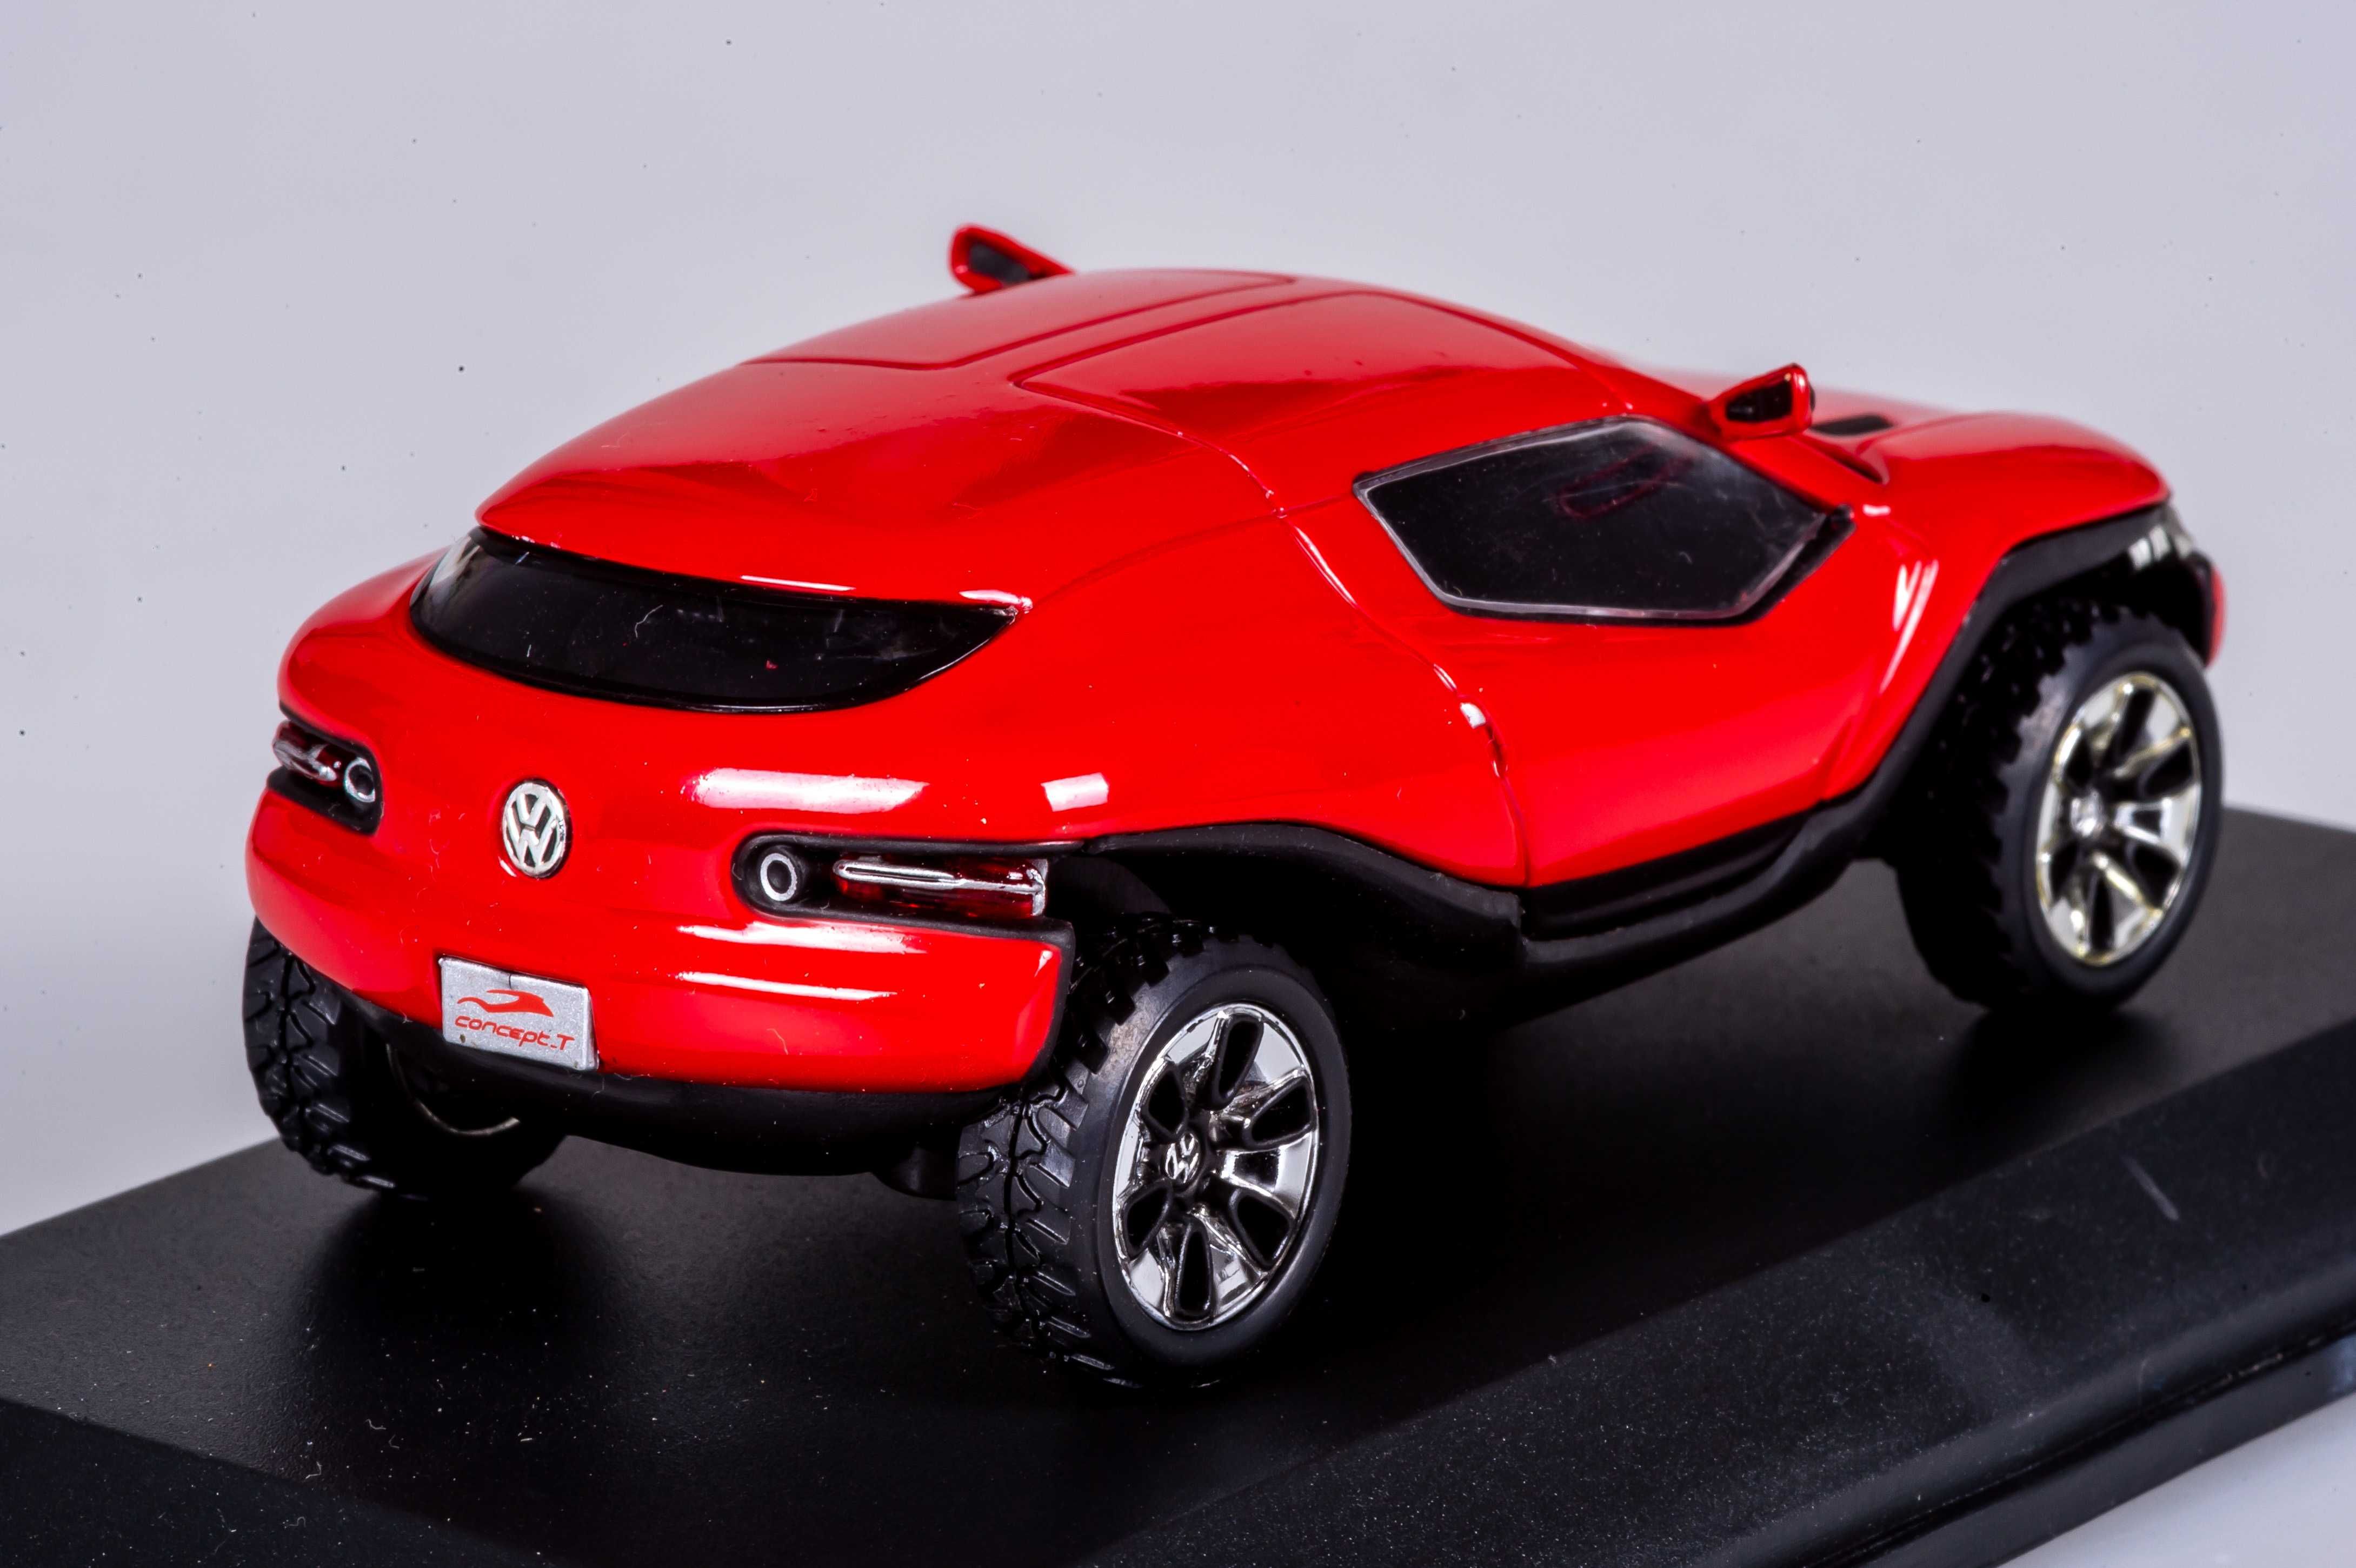 1/43 macheta Volkswagen Concept T - norev